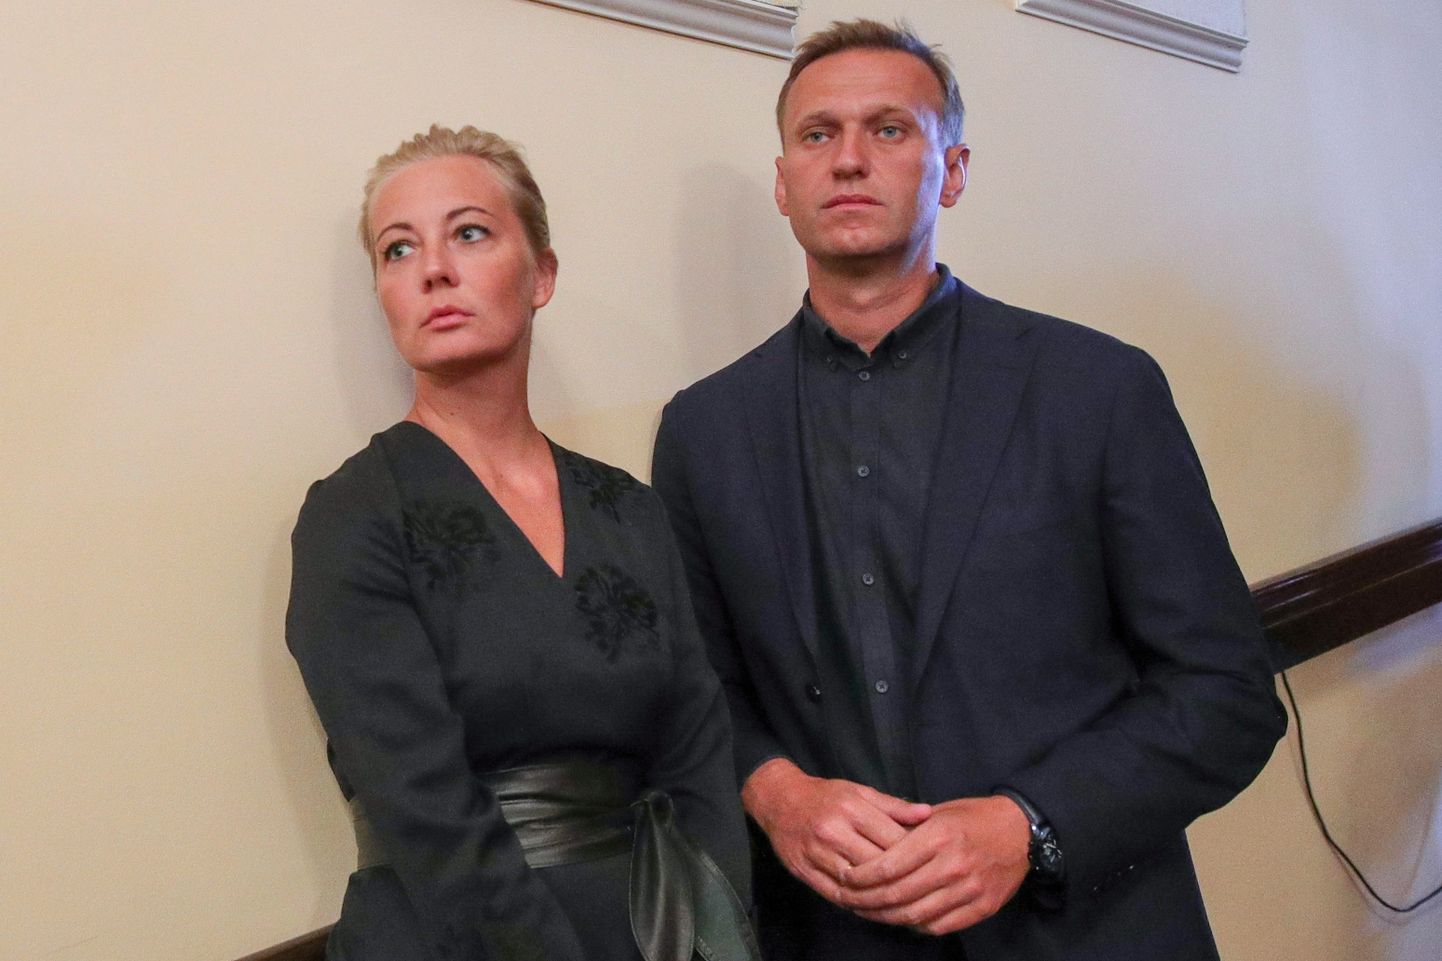 Алексей Навальный с женой Юлией